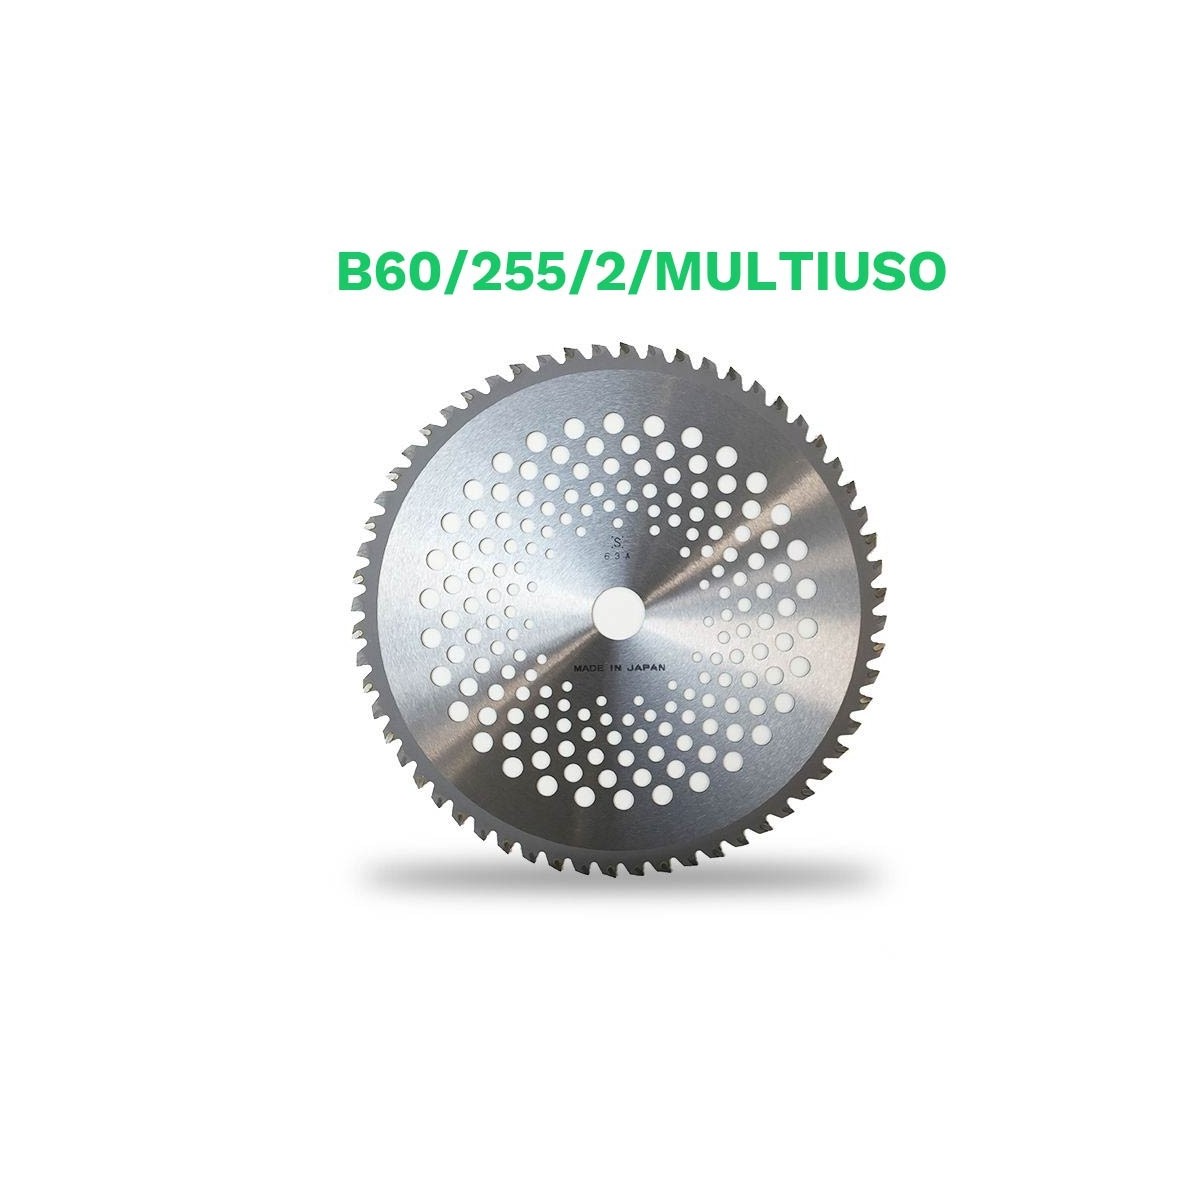 Echo disco metalico 60 dientes b60/255/2 (multiuso) p.tungsteno